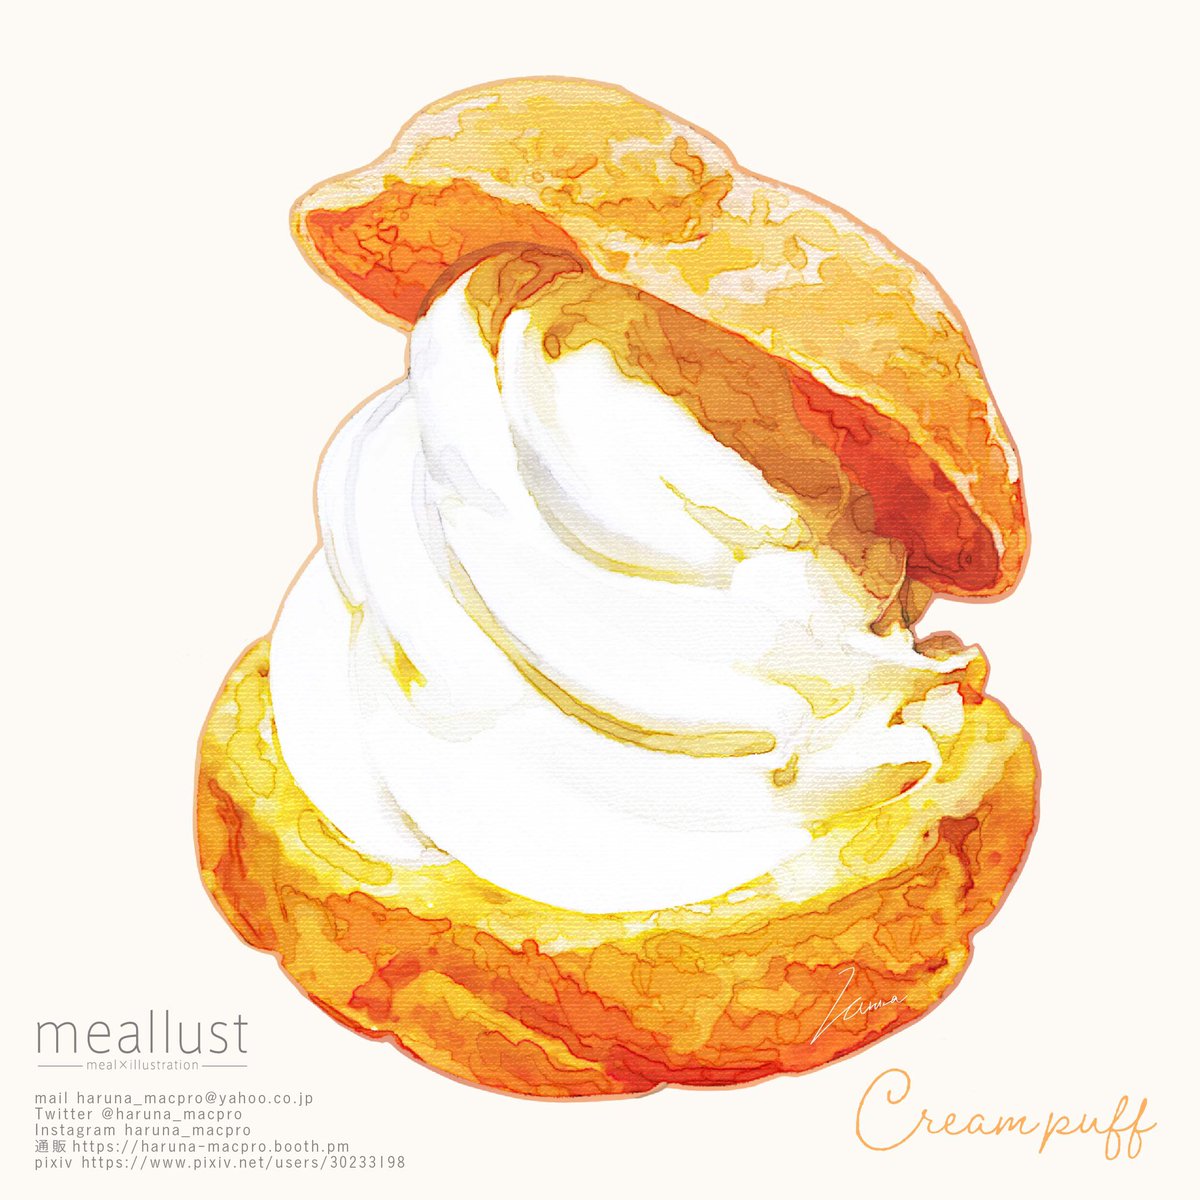 「Cream puff 」|晴菜のイラスト